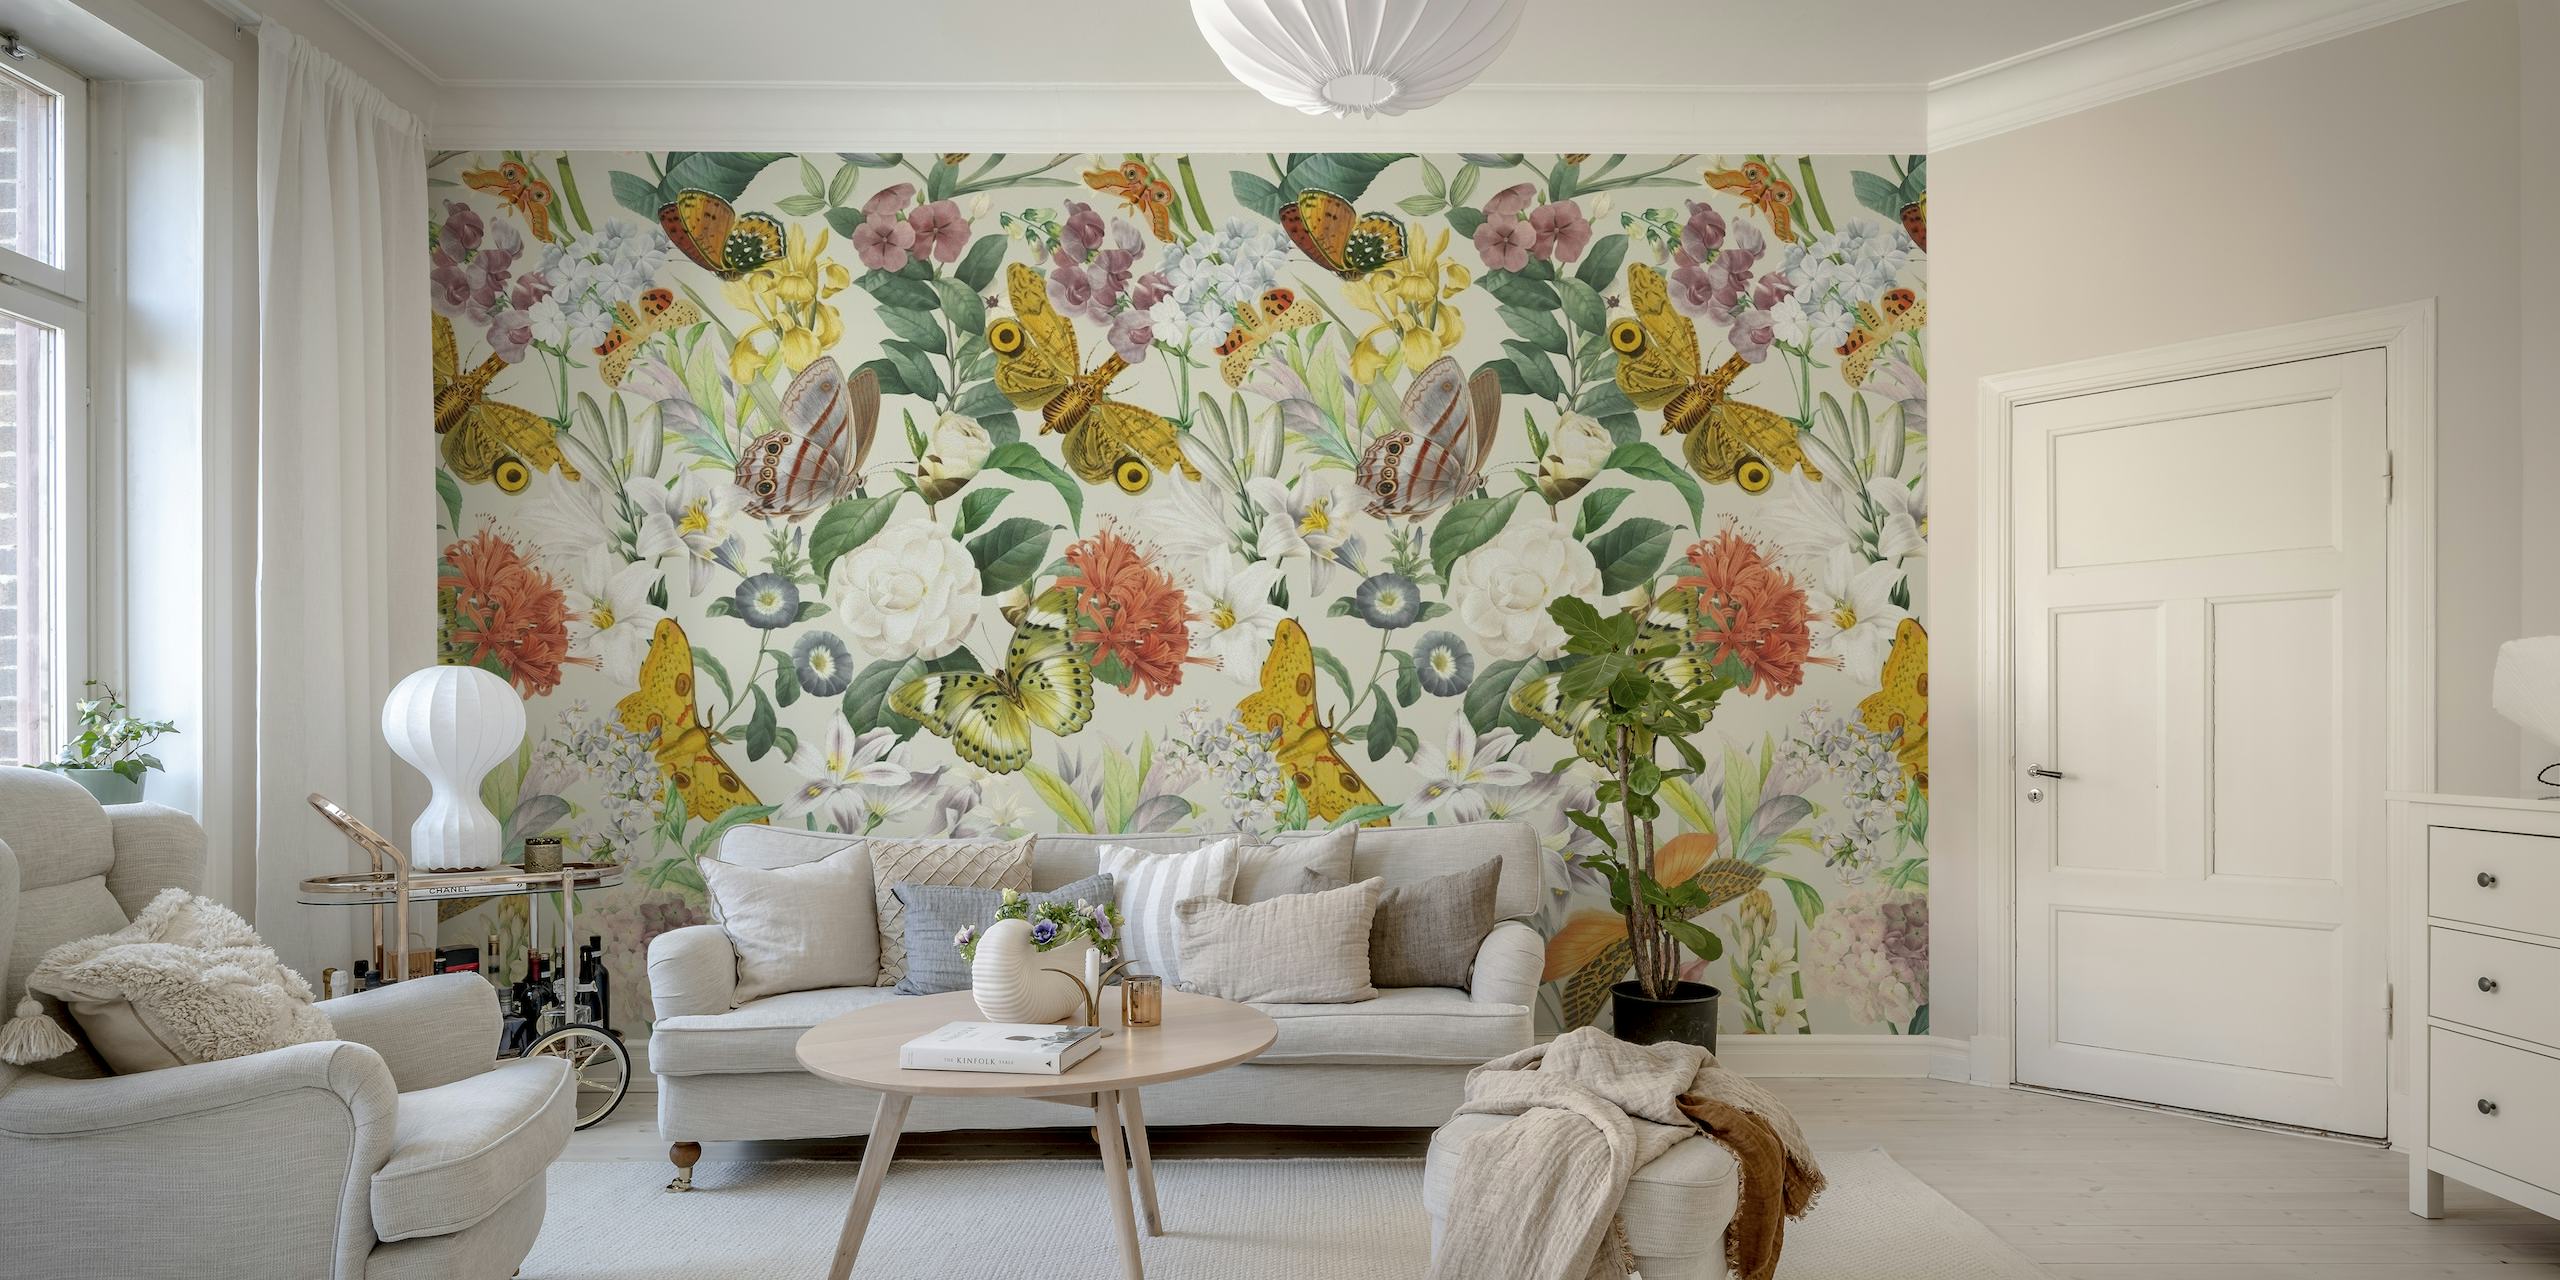 Et vægmaleri med et smukt mønster af møl, sommerfugle og blomsterelementer i bløde pastelfarver.